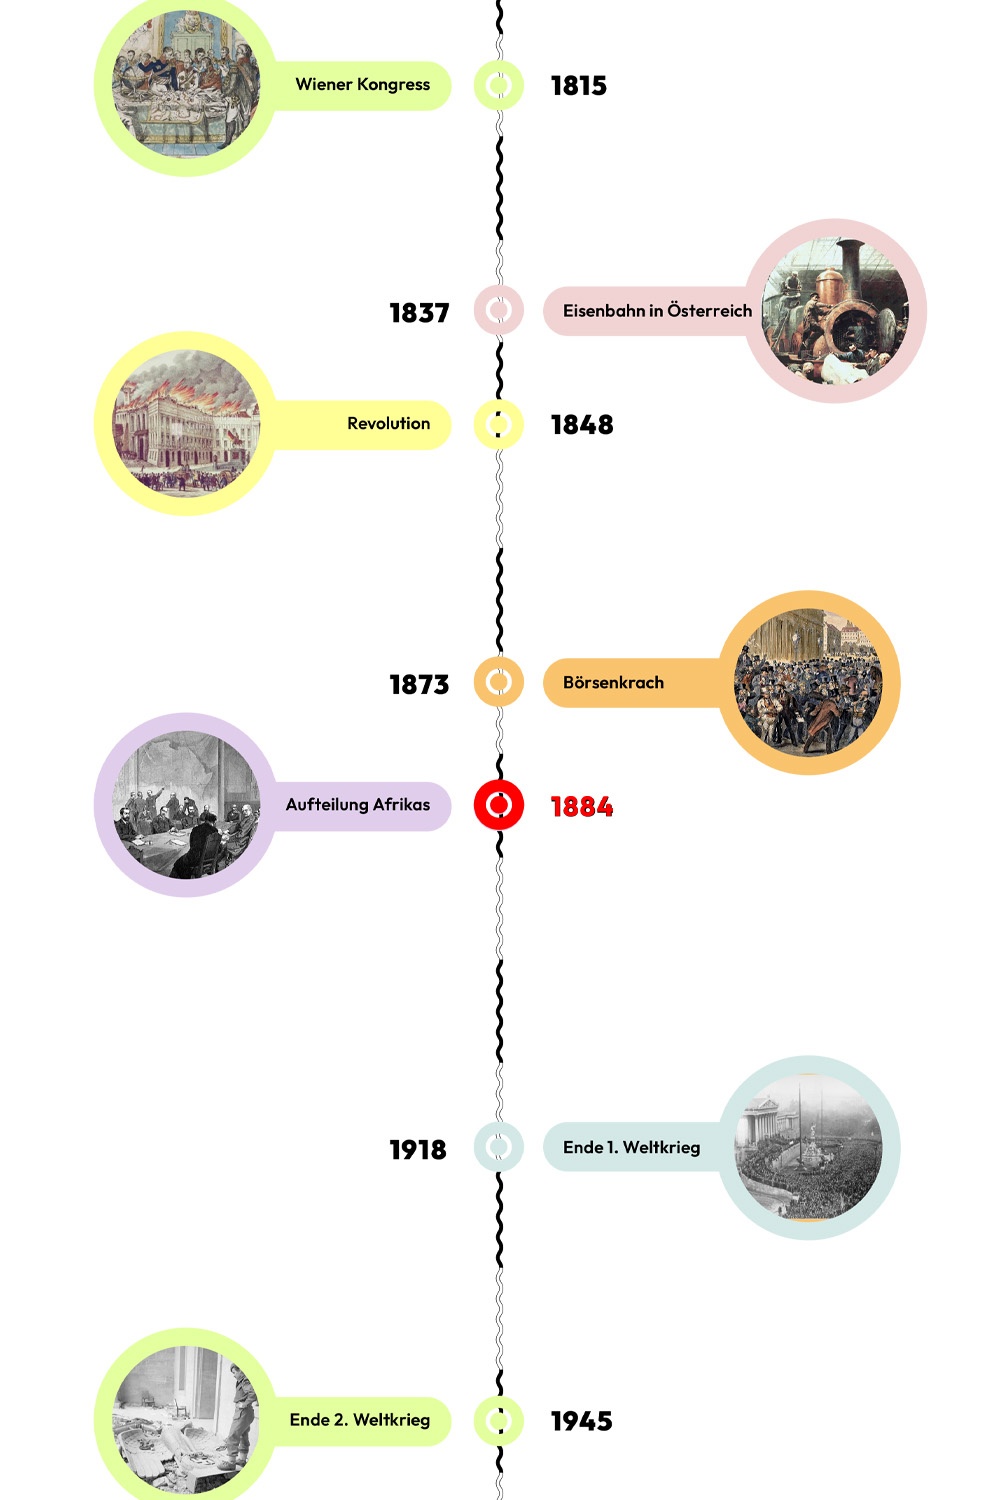 Zeitstrahl mit historischen Ereignissen - 1884 ist hervorgehoben © wasbishergeschah.at